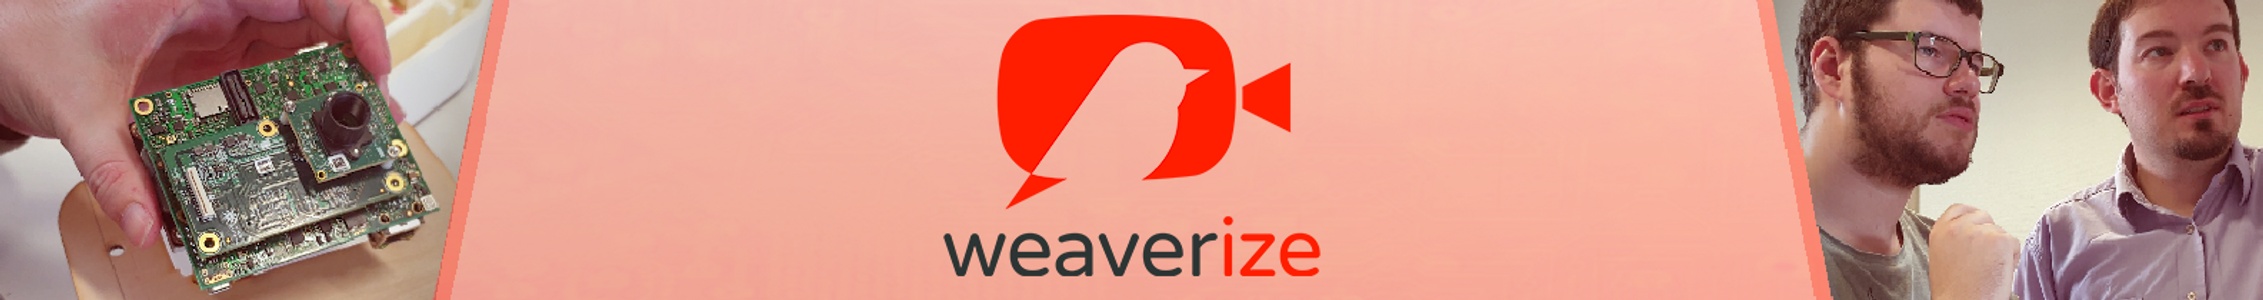 Weaverize